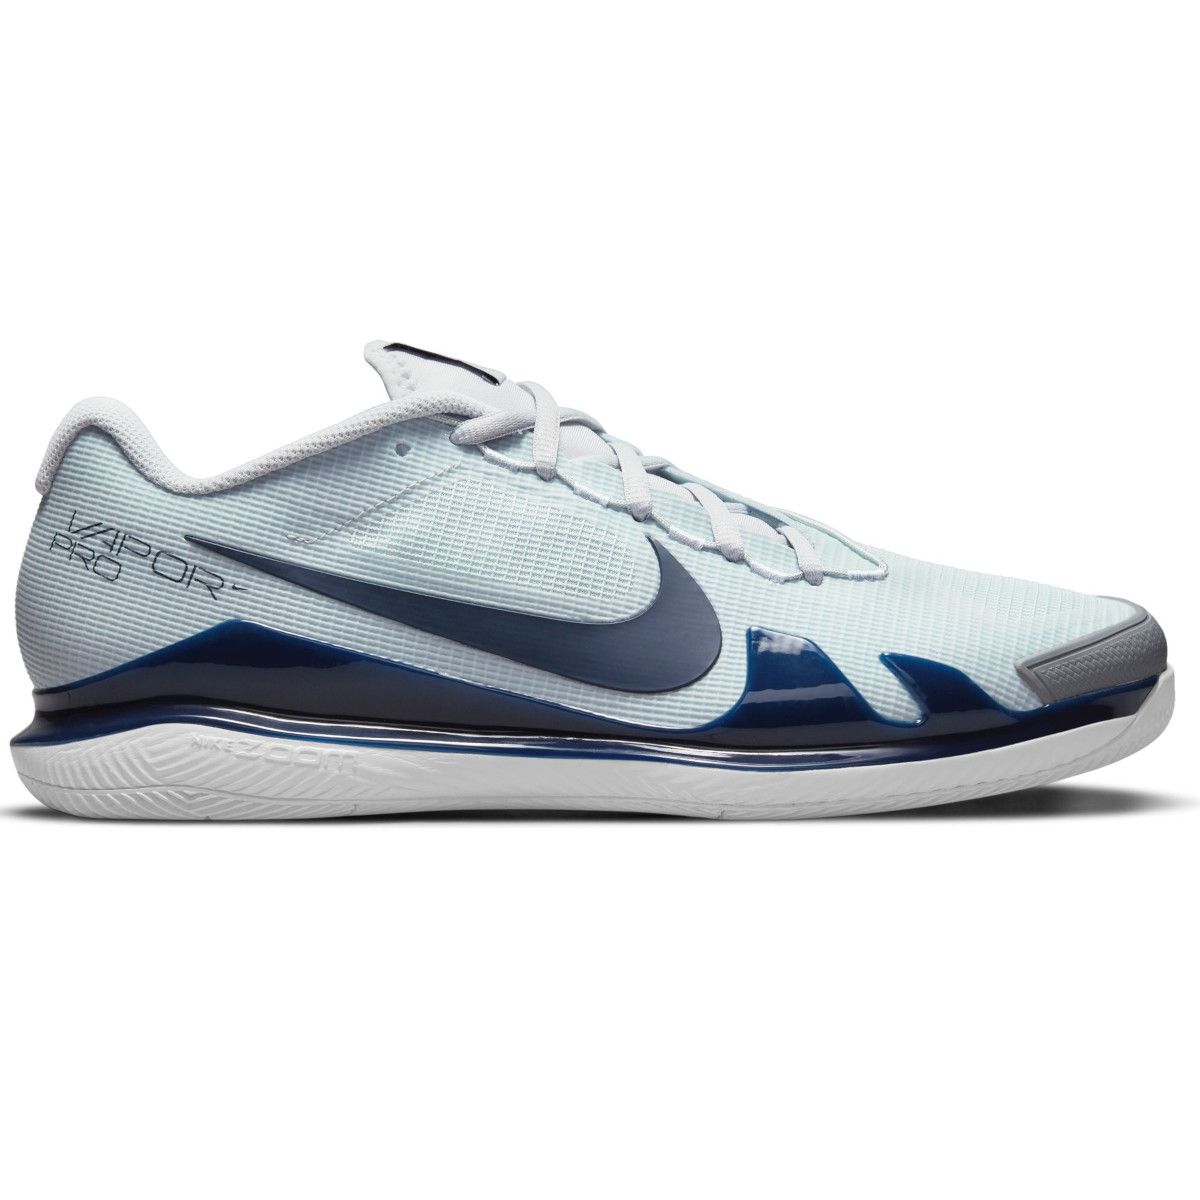 NikeCourt Air Zoom Vapor Pro Men's Hard Court Tennis Shoes C